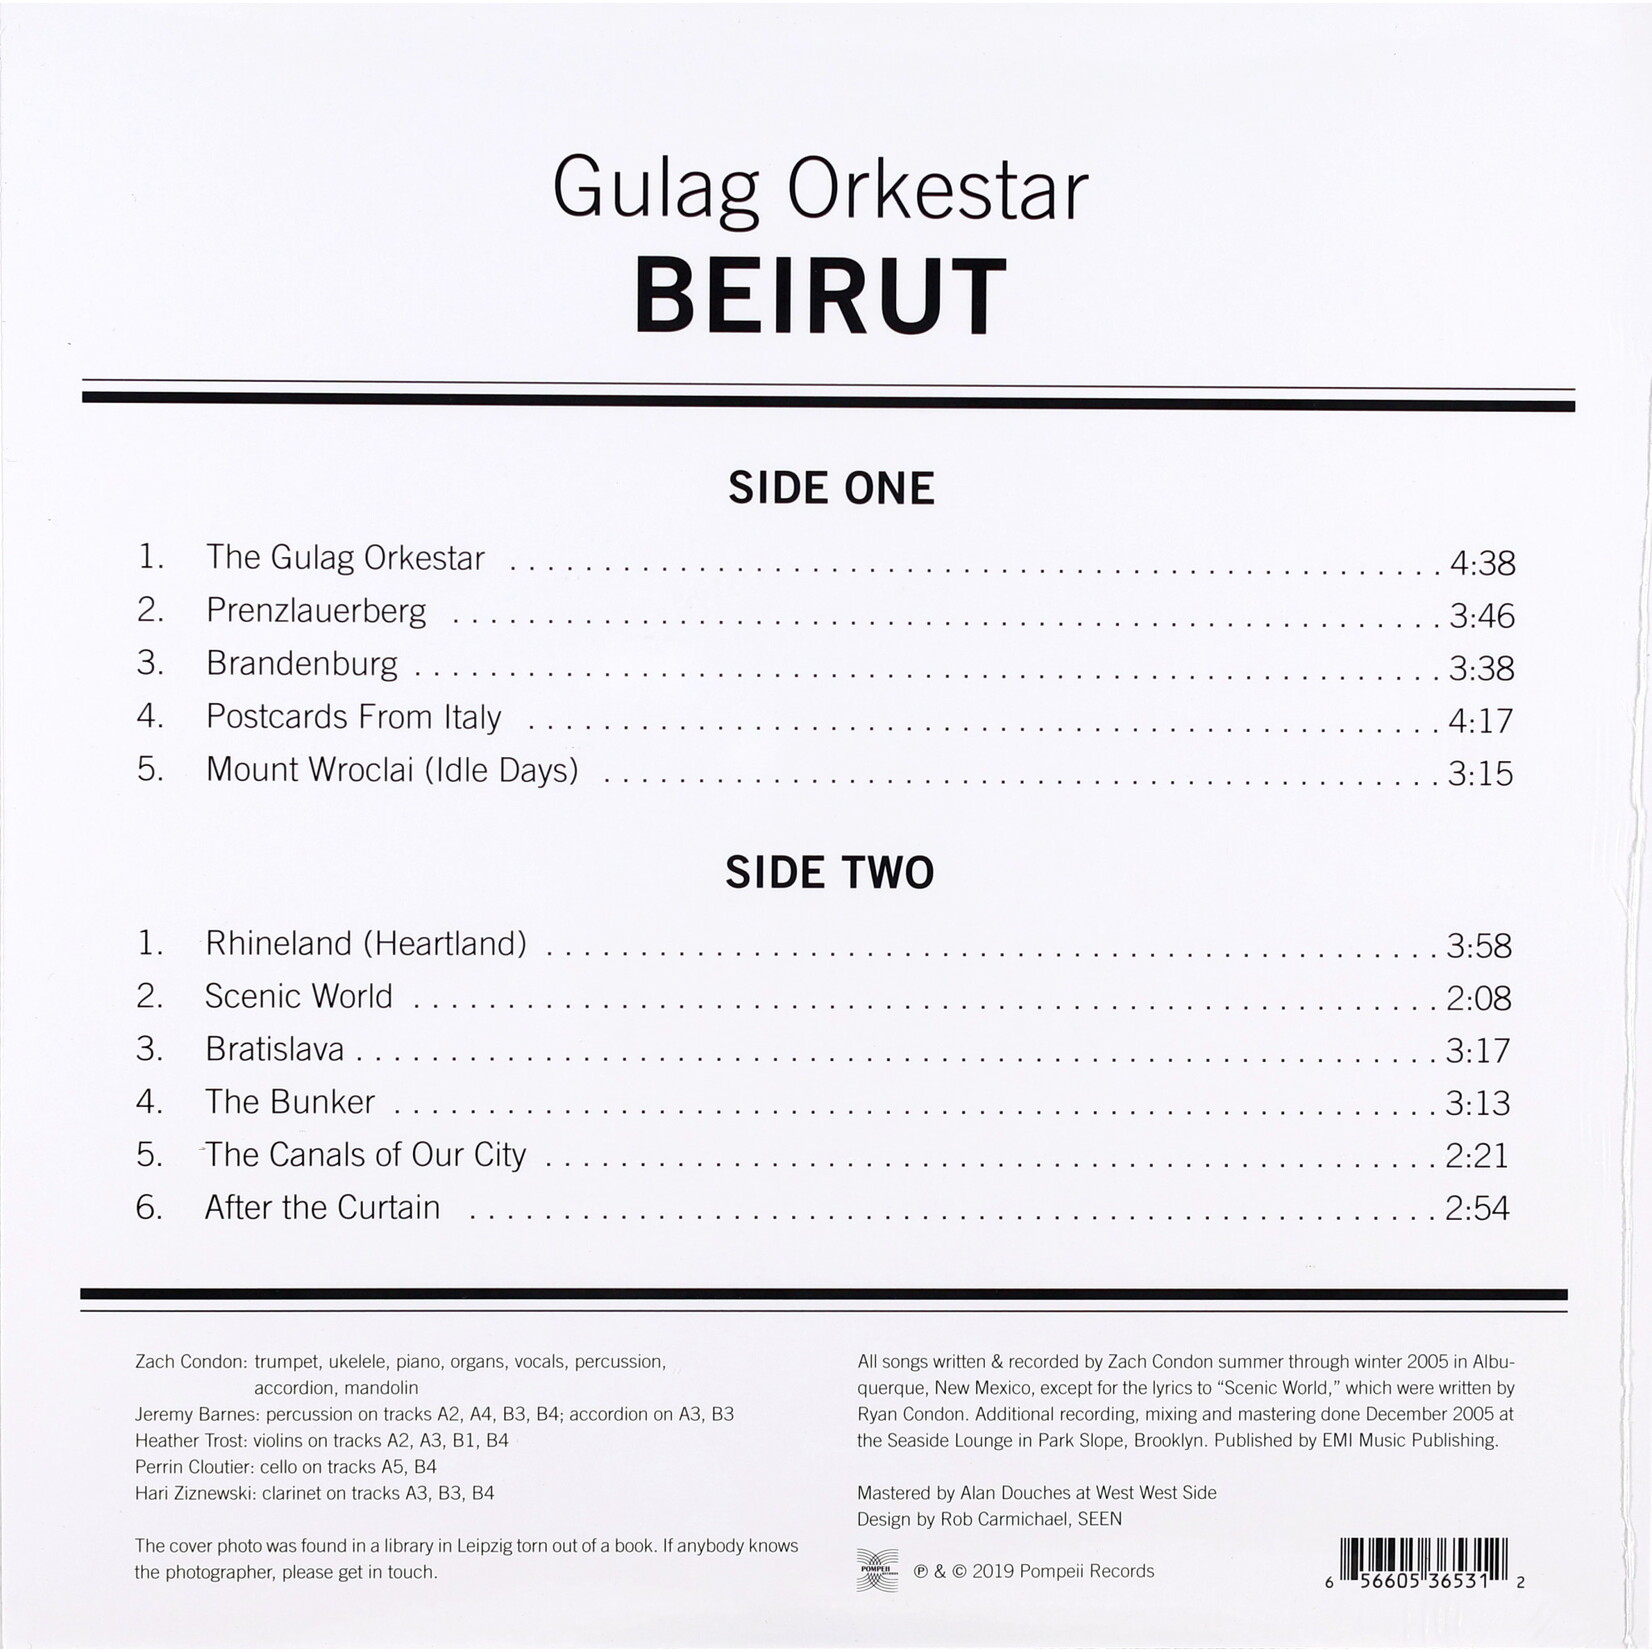 BEIRUT - GULAG ORKESTAR - LP